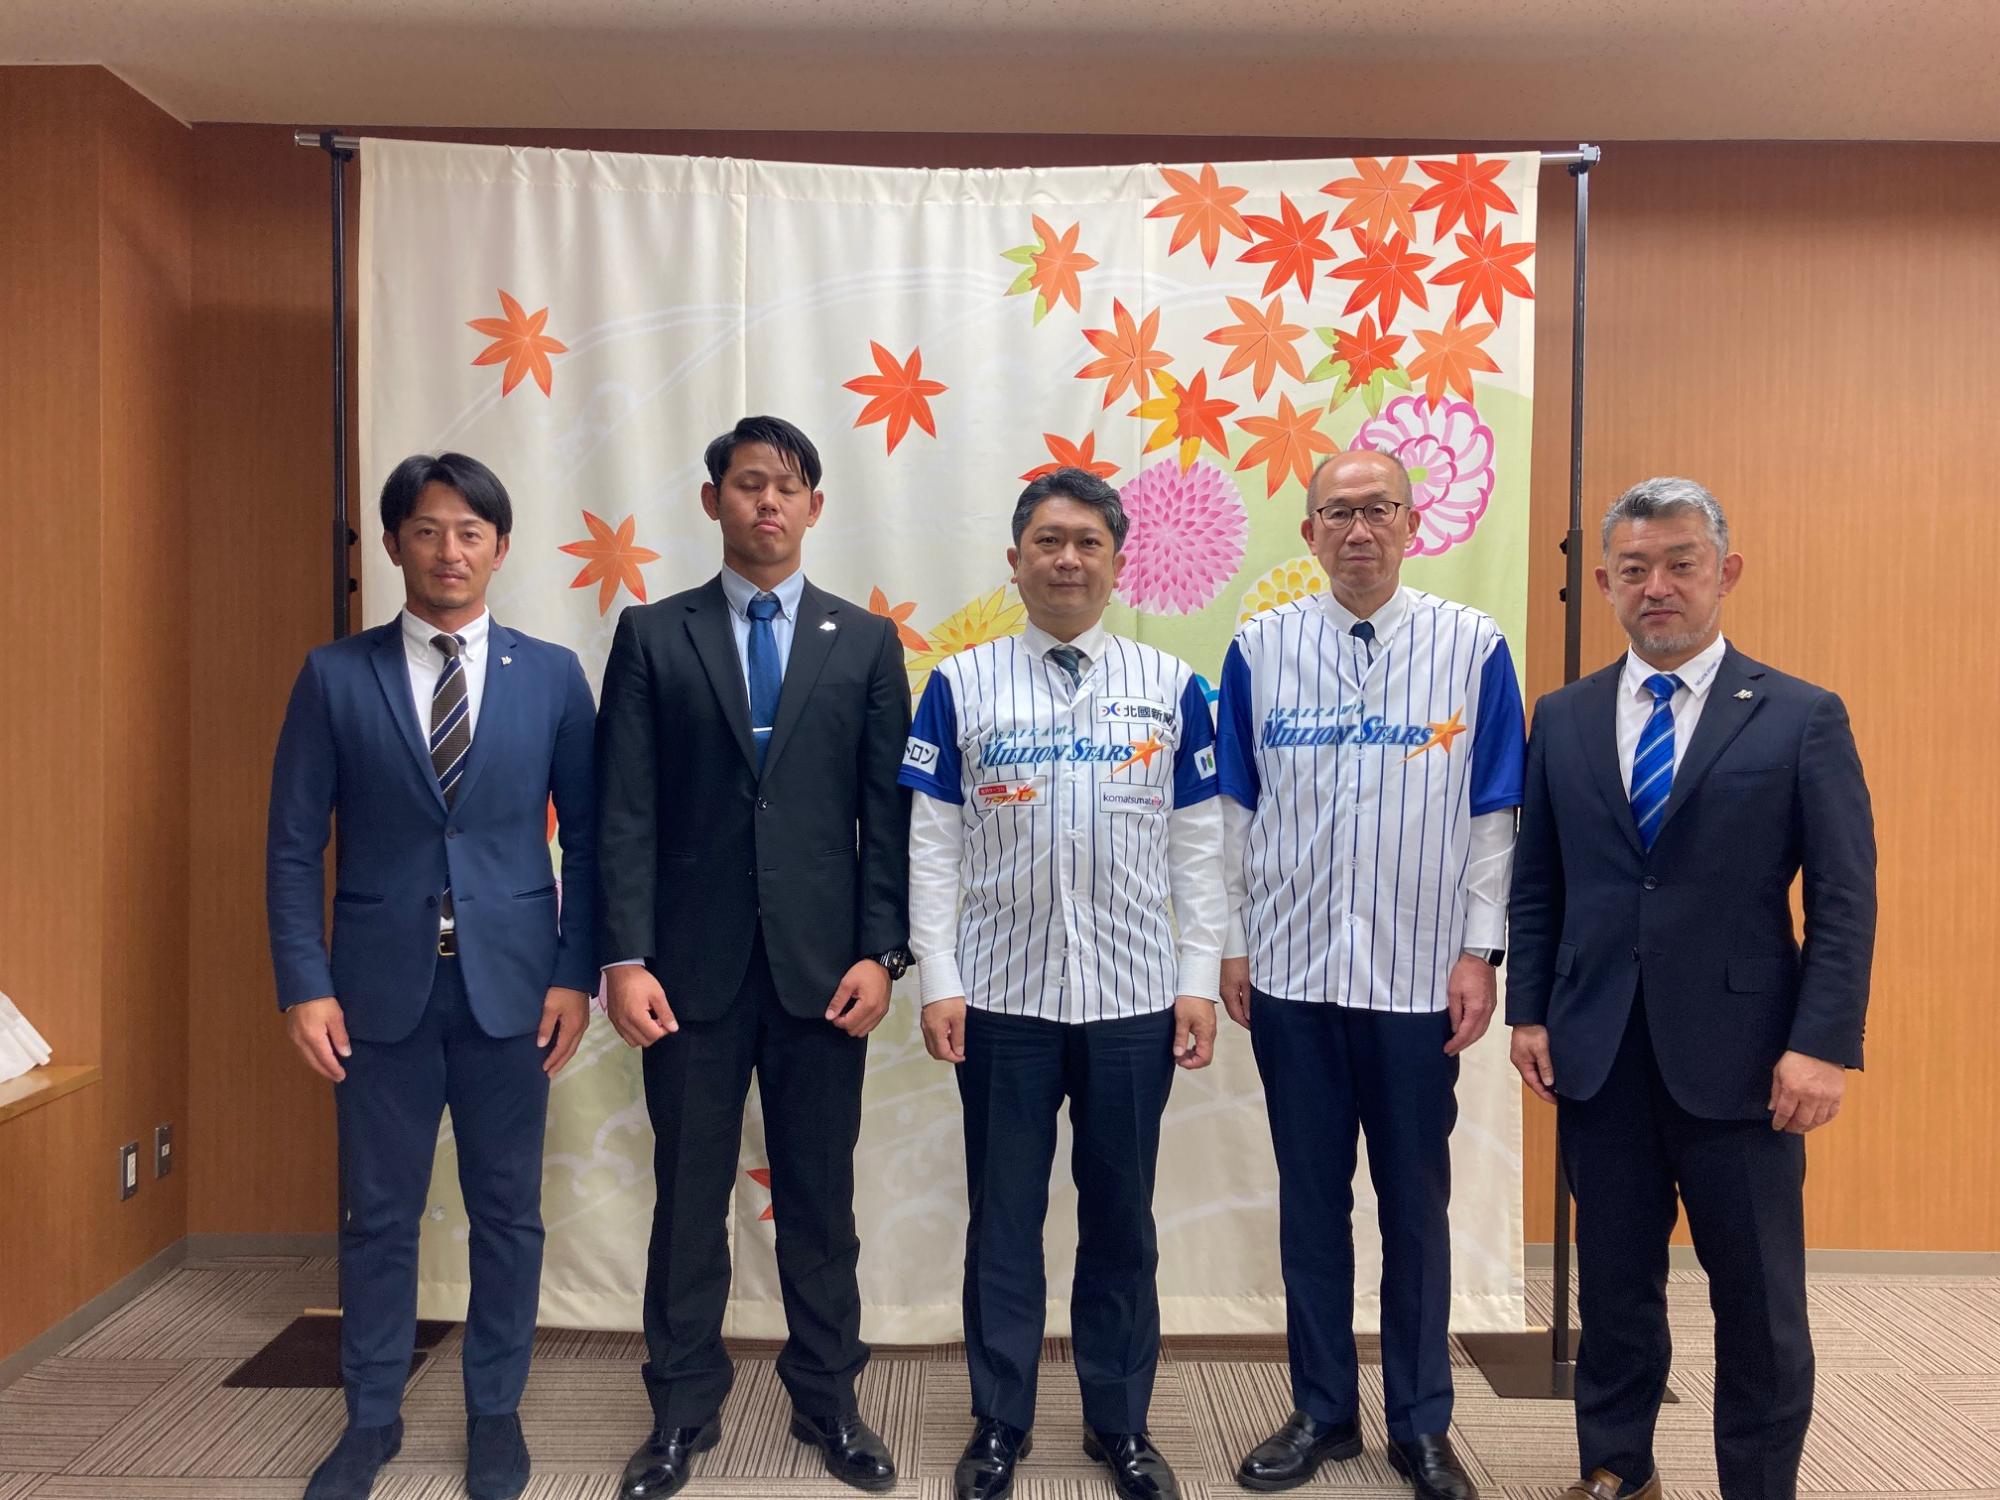 石川ミリオンスターズの端保代表、後藤監督兼選手、野村選手と市長の写真